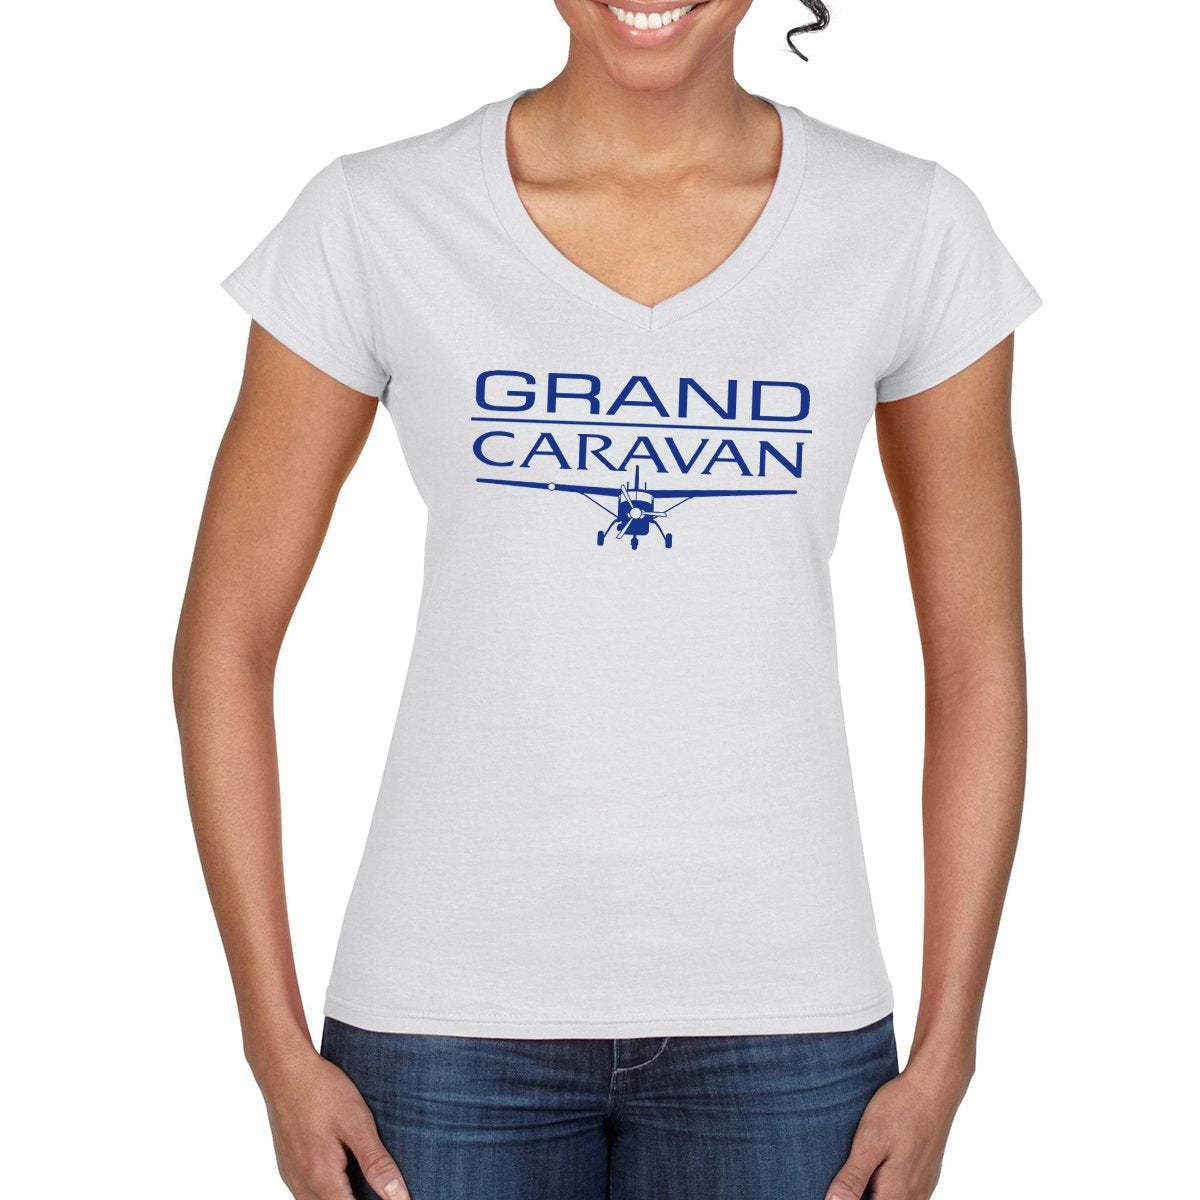 CESSNA GRAND CARAVAN Women's T-Shirt